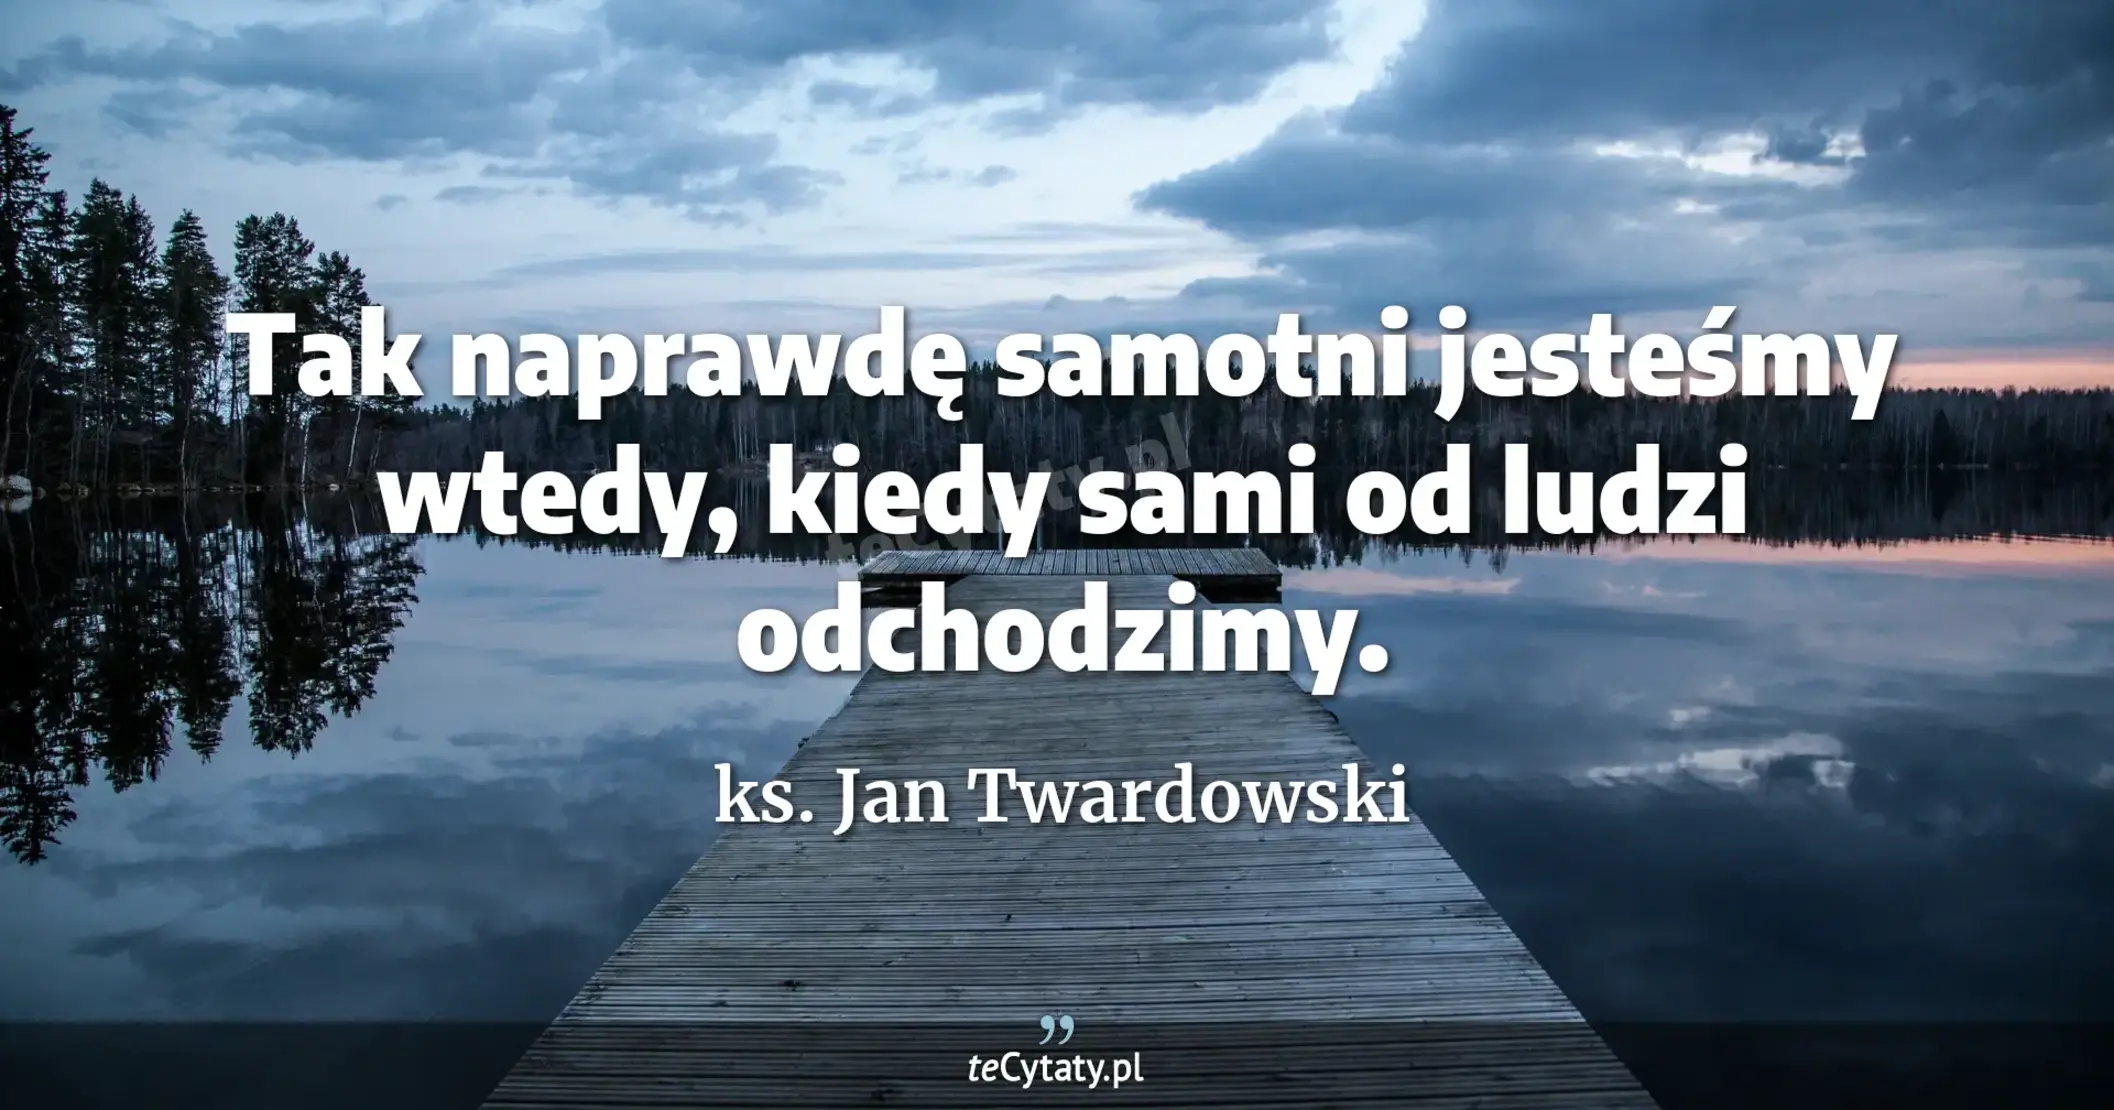 Tak naprawdę samotni jesteśmy wtedy, kiedy sami od ludzi odchodzimy. - ks. Jan Twardowski